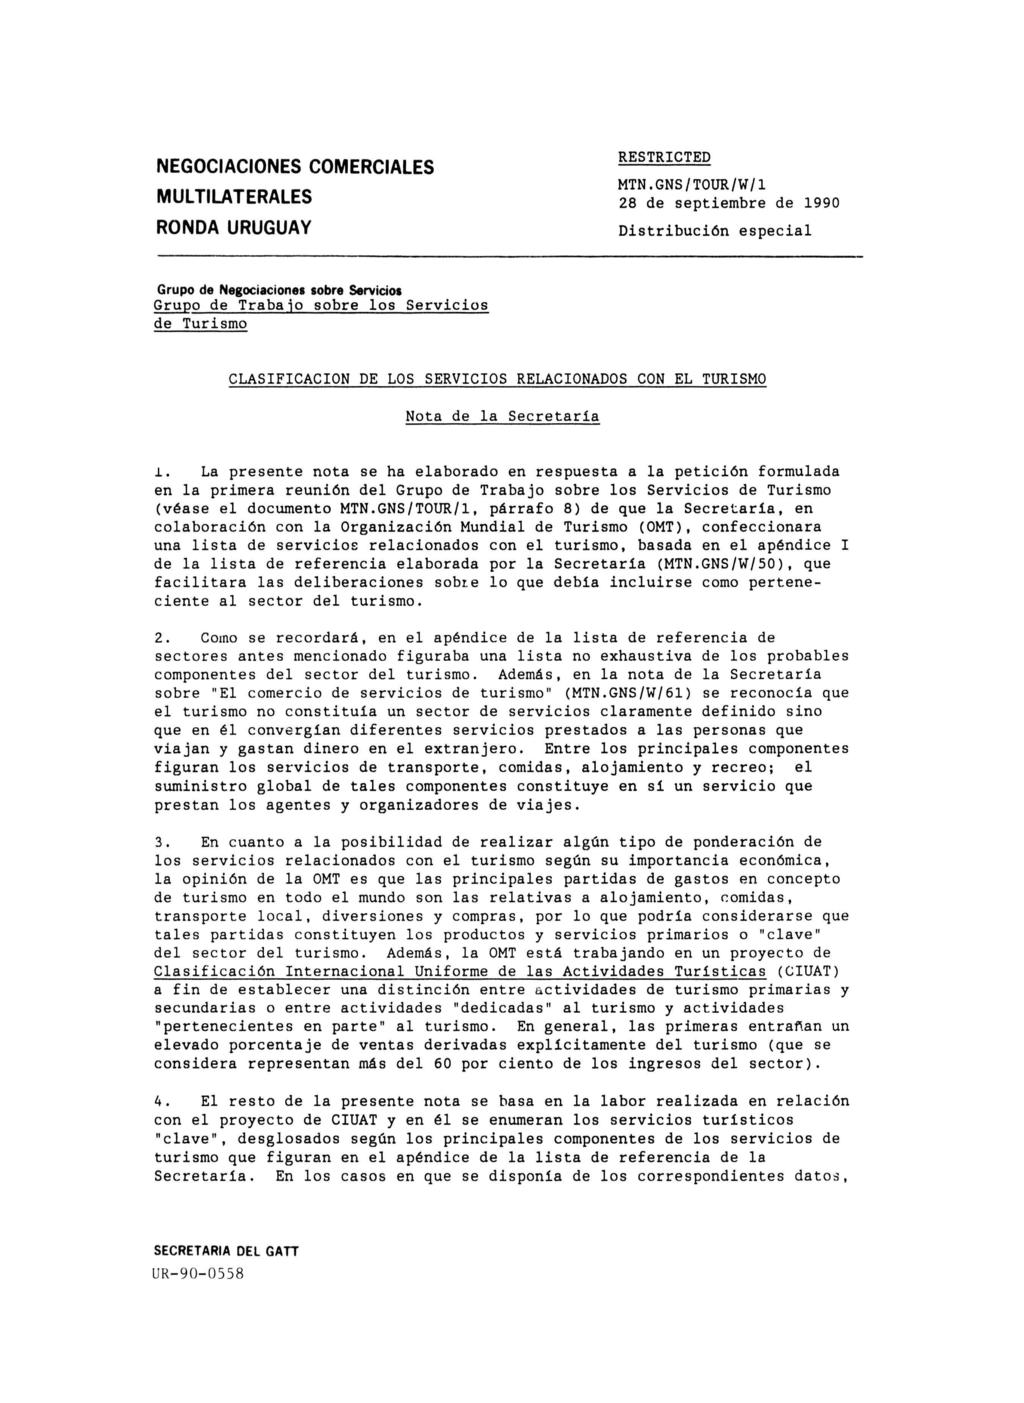 NEGOCIACIONES COMERCIALES MULTILATERALES RONDA URUGUAY RESTRICTED MTN.